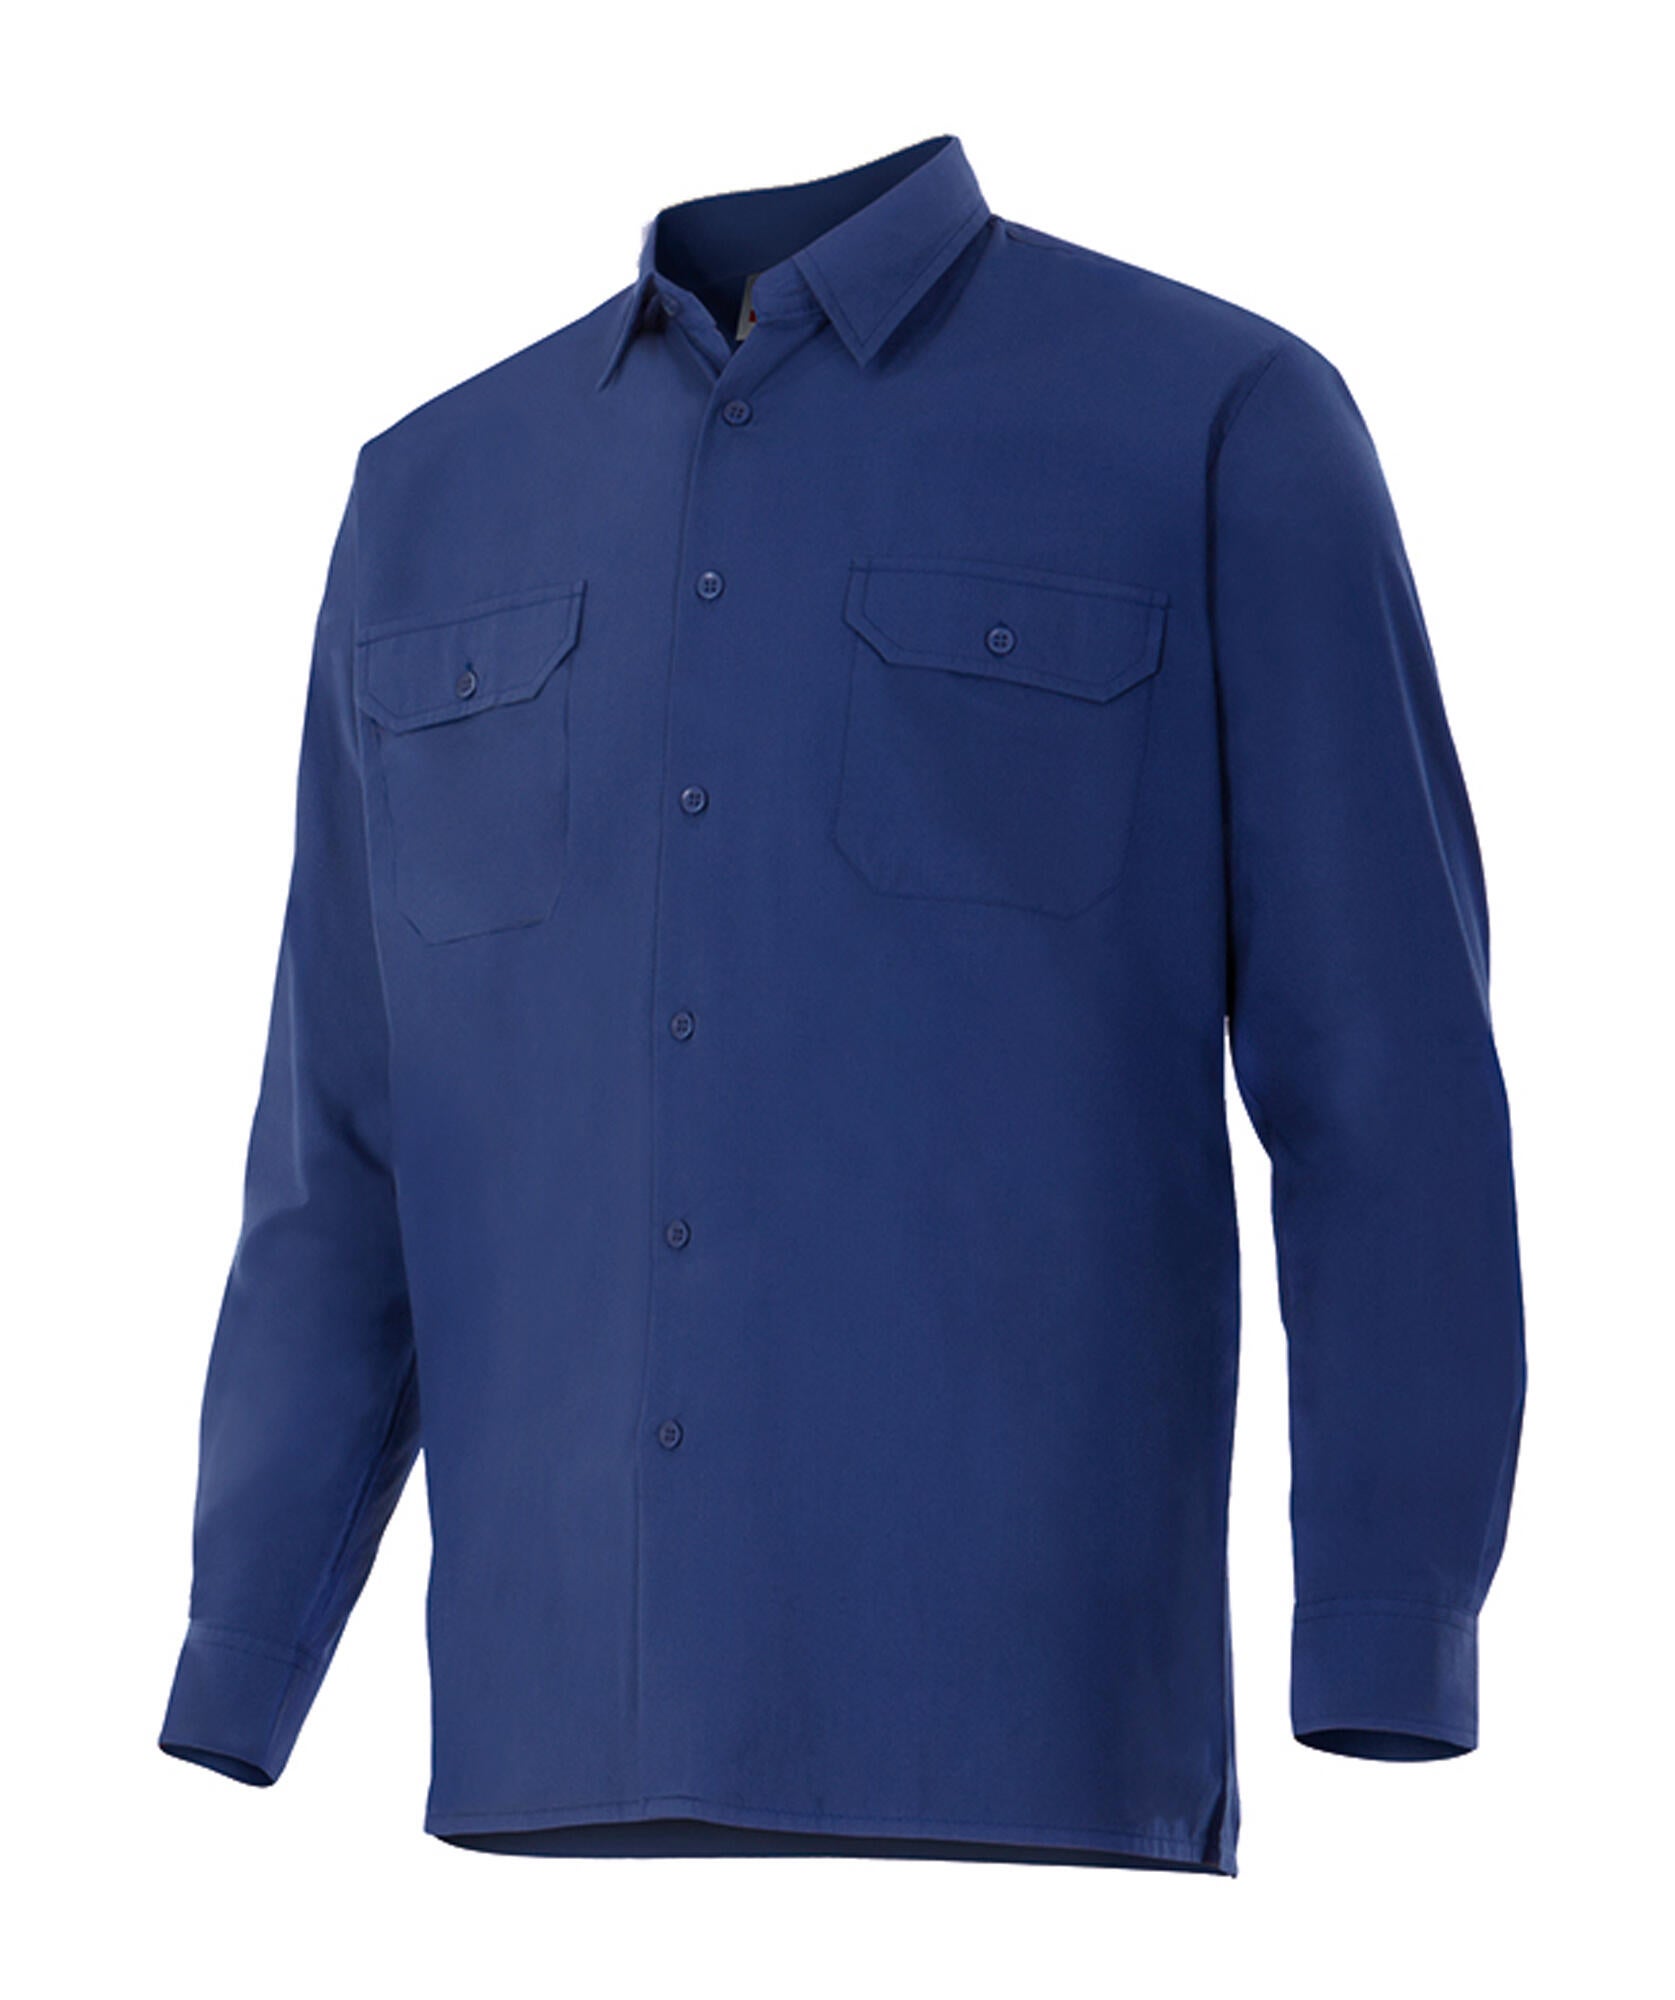 Camisa manga larga velilla 520 azul marino txxl